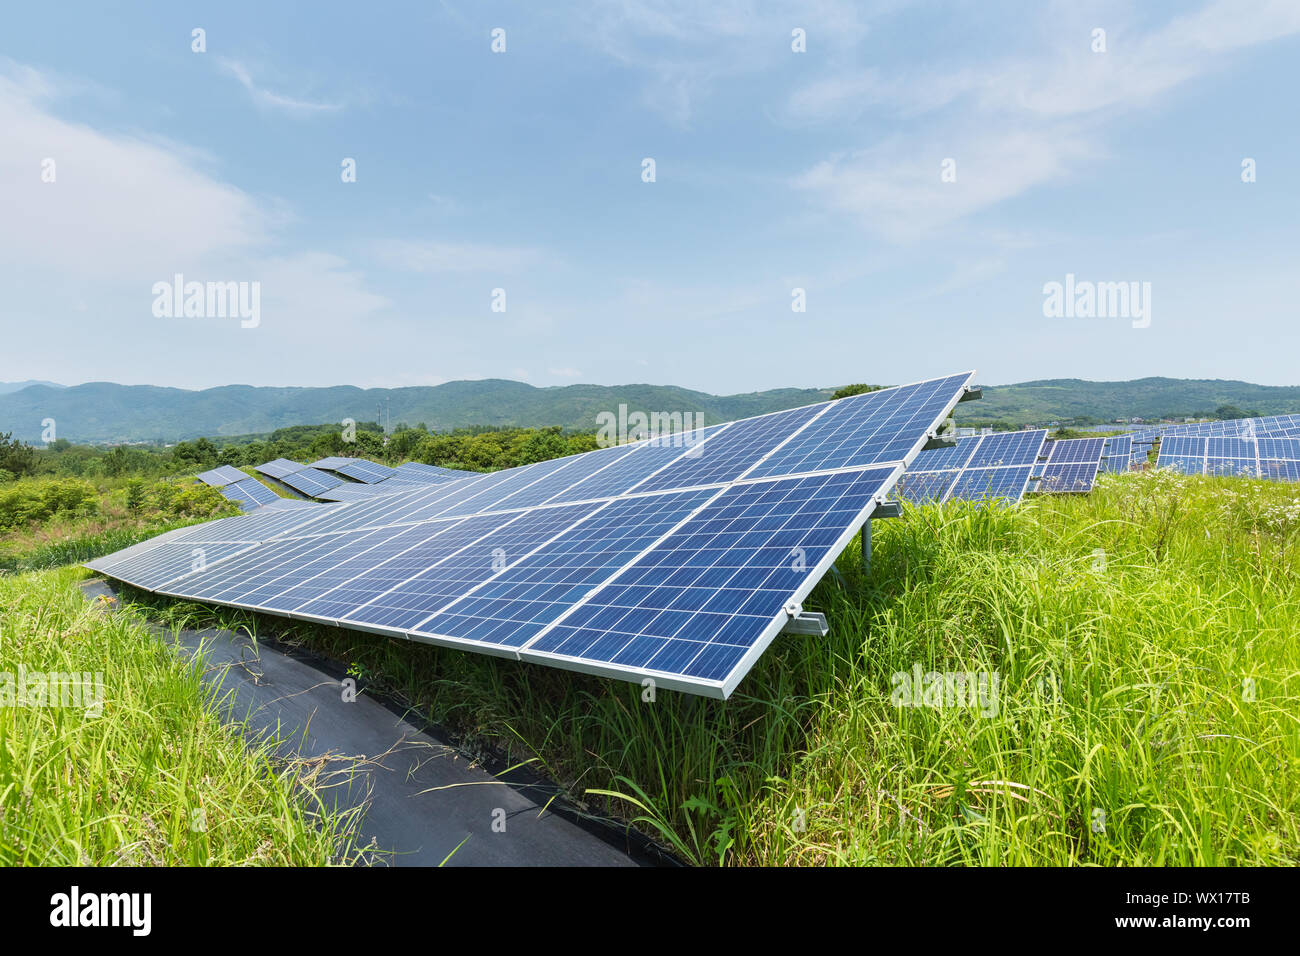 solar panels on hillside Stock Photo